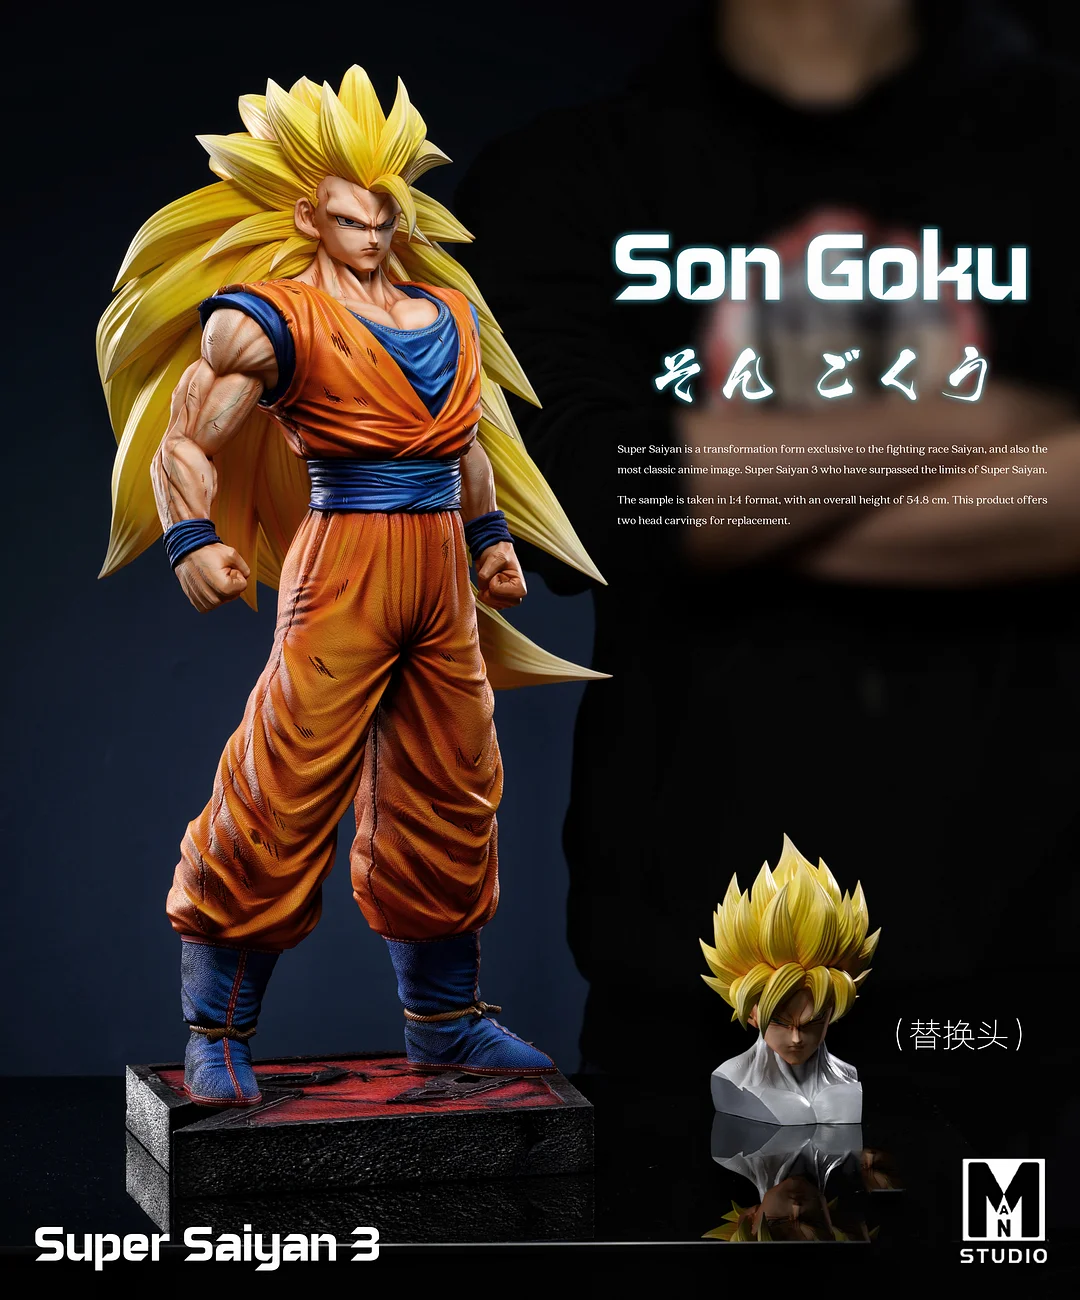 PRE-ORDER HU BEN Studio - Dragon Ball Super Saiyan 3 Son Goku 1/6